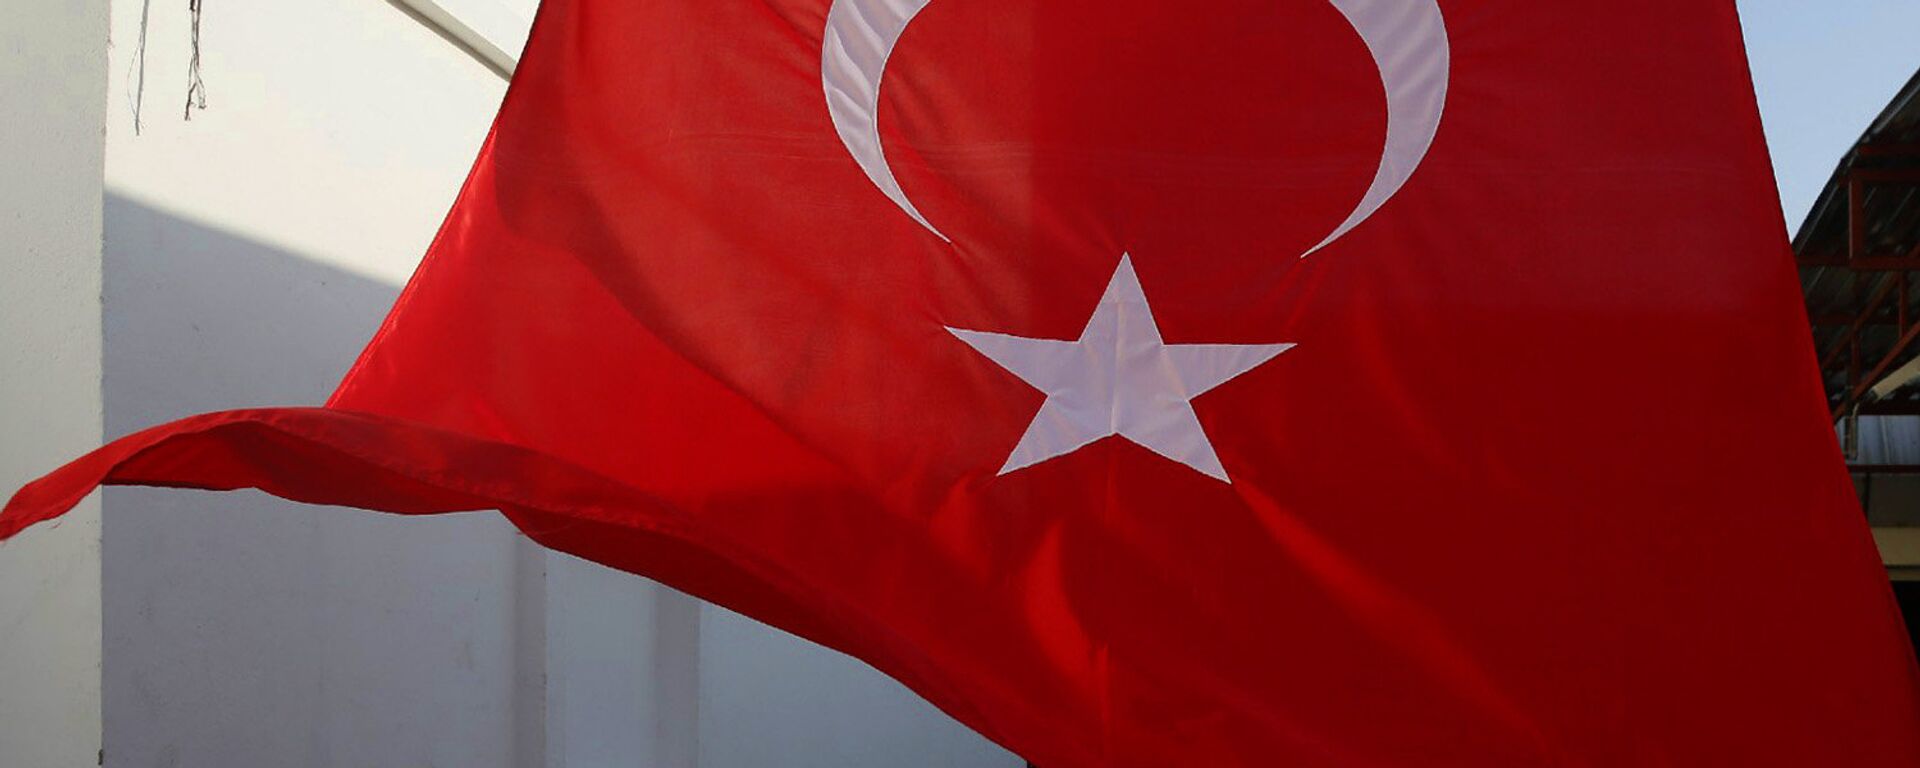 Турецкий флаг - Sputnik Արմենիա, 1920, 29.12.2021